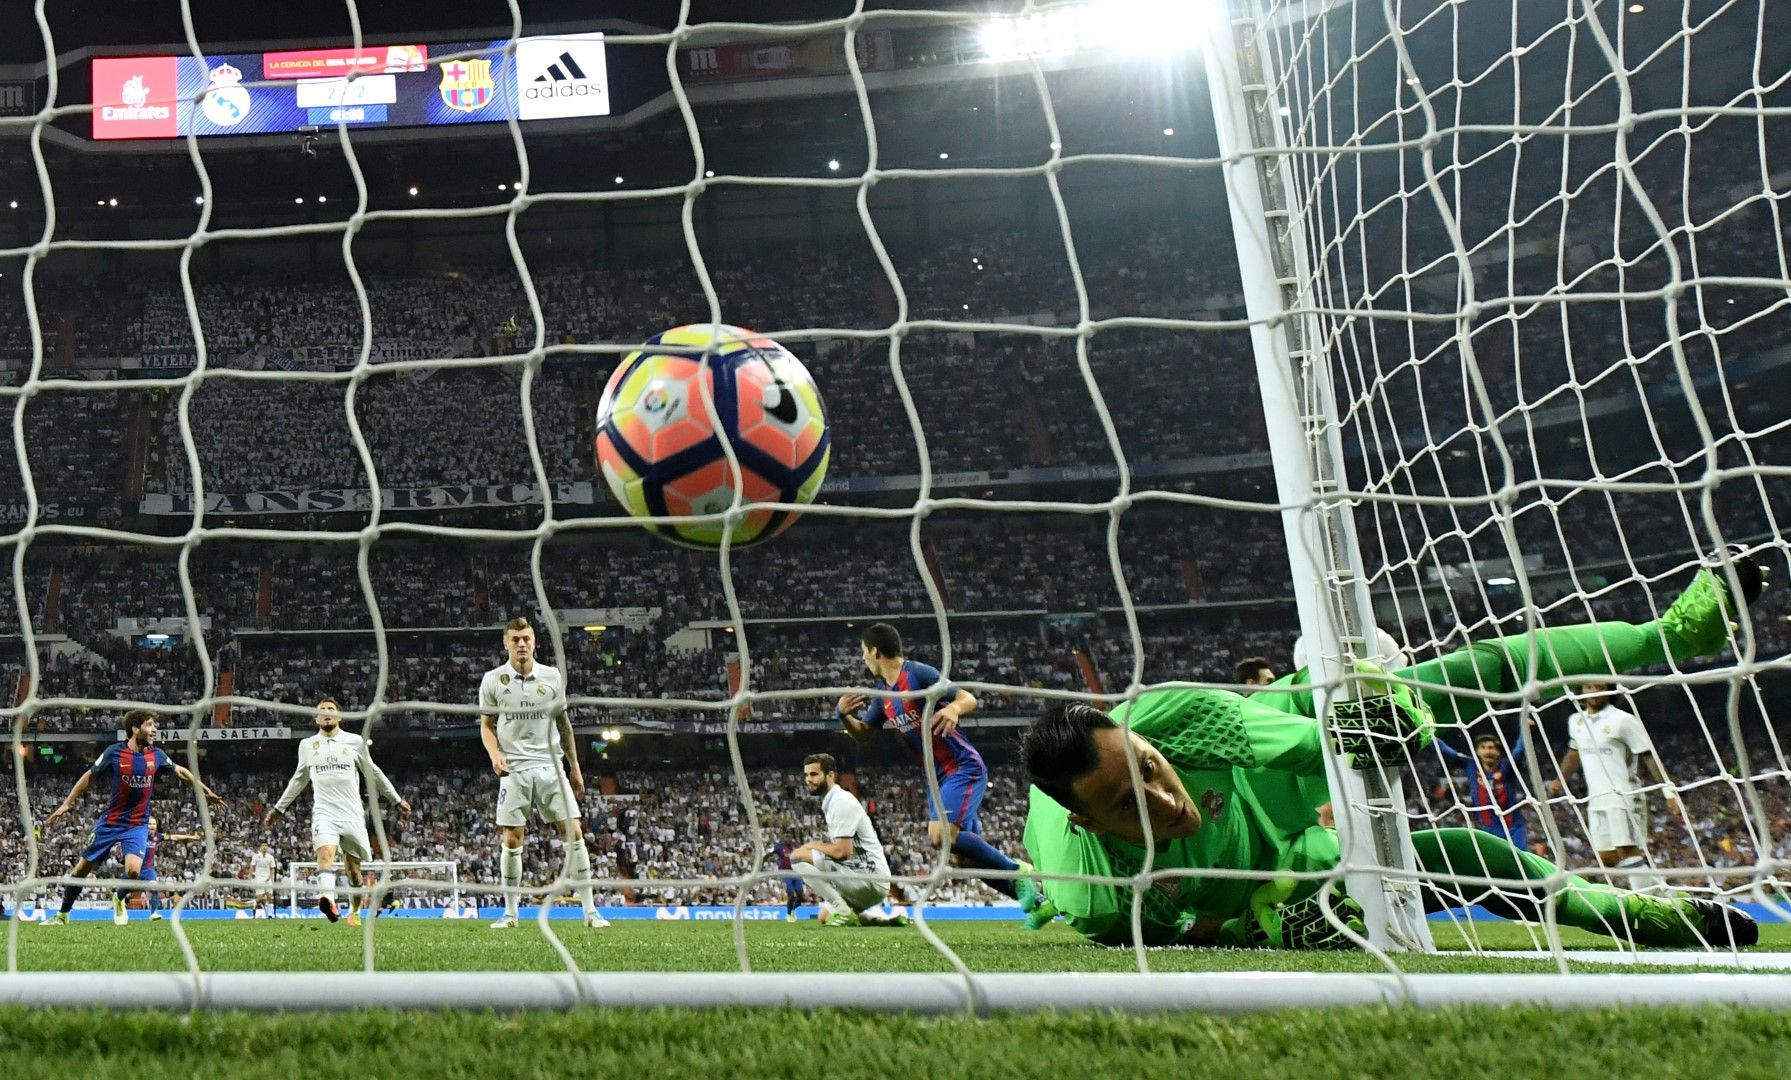 23 април 2017 г., Реал - Барселона 2:3. Епохално Ел Класико, което е решено с последния удар по топката в мача. Секунда преди изтичането на добавеното време, Меси пронизва Кейлор Навас в близкия ъгъл - 2:3!